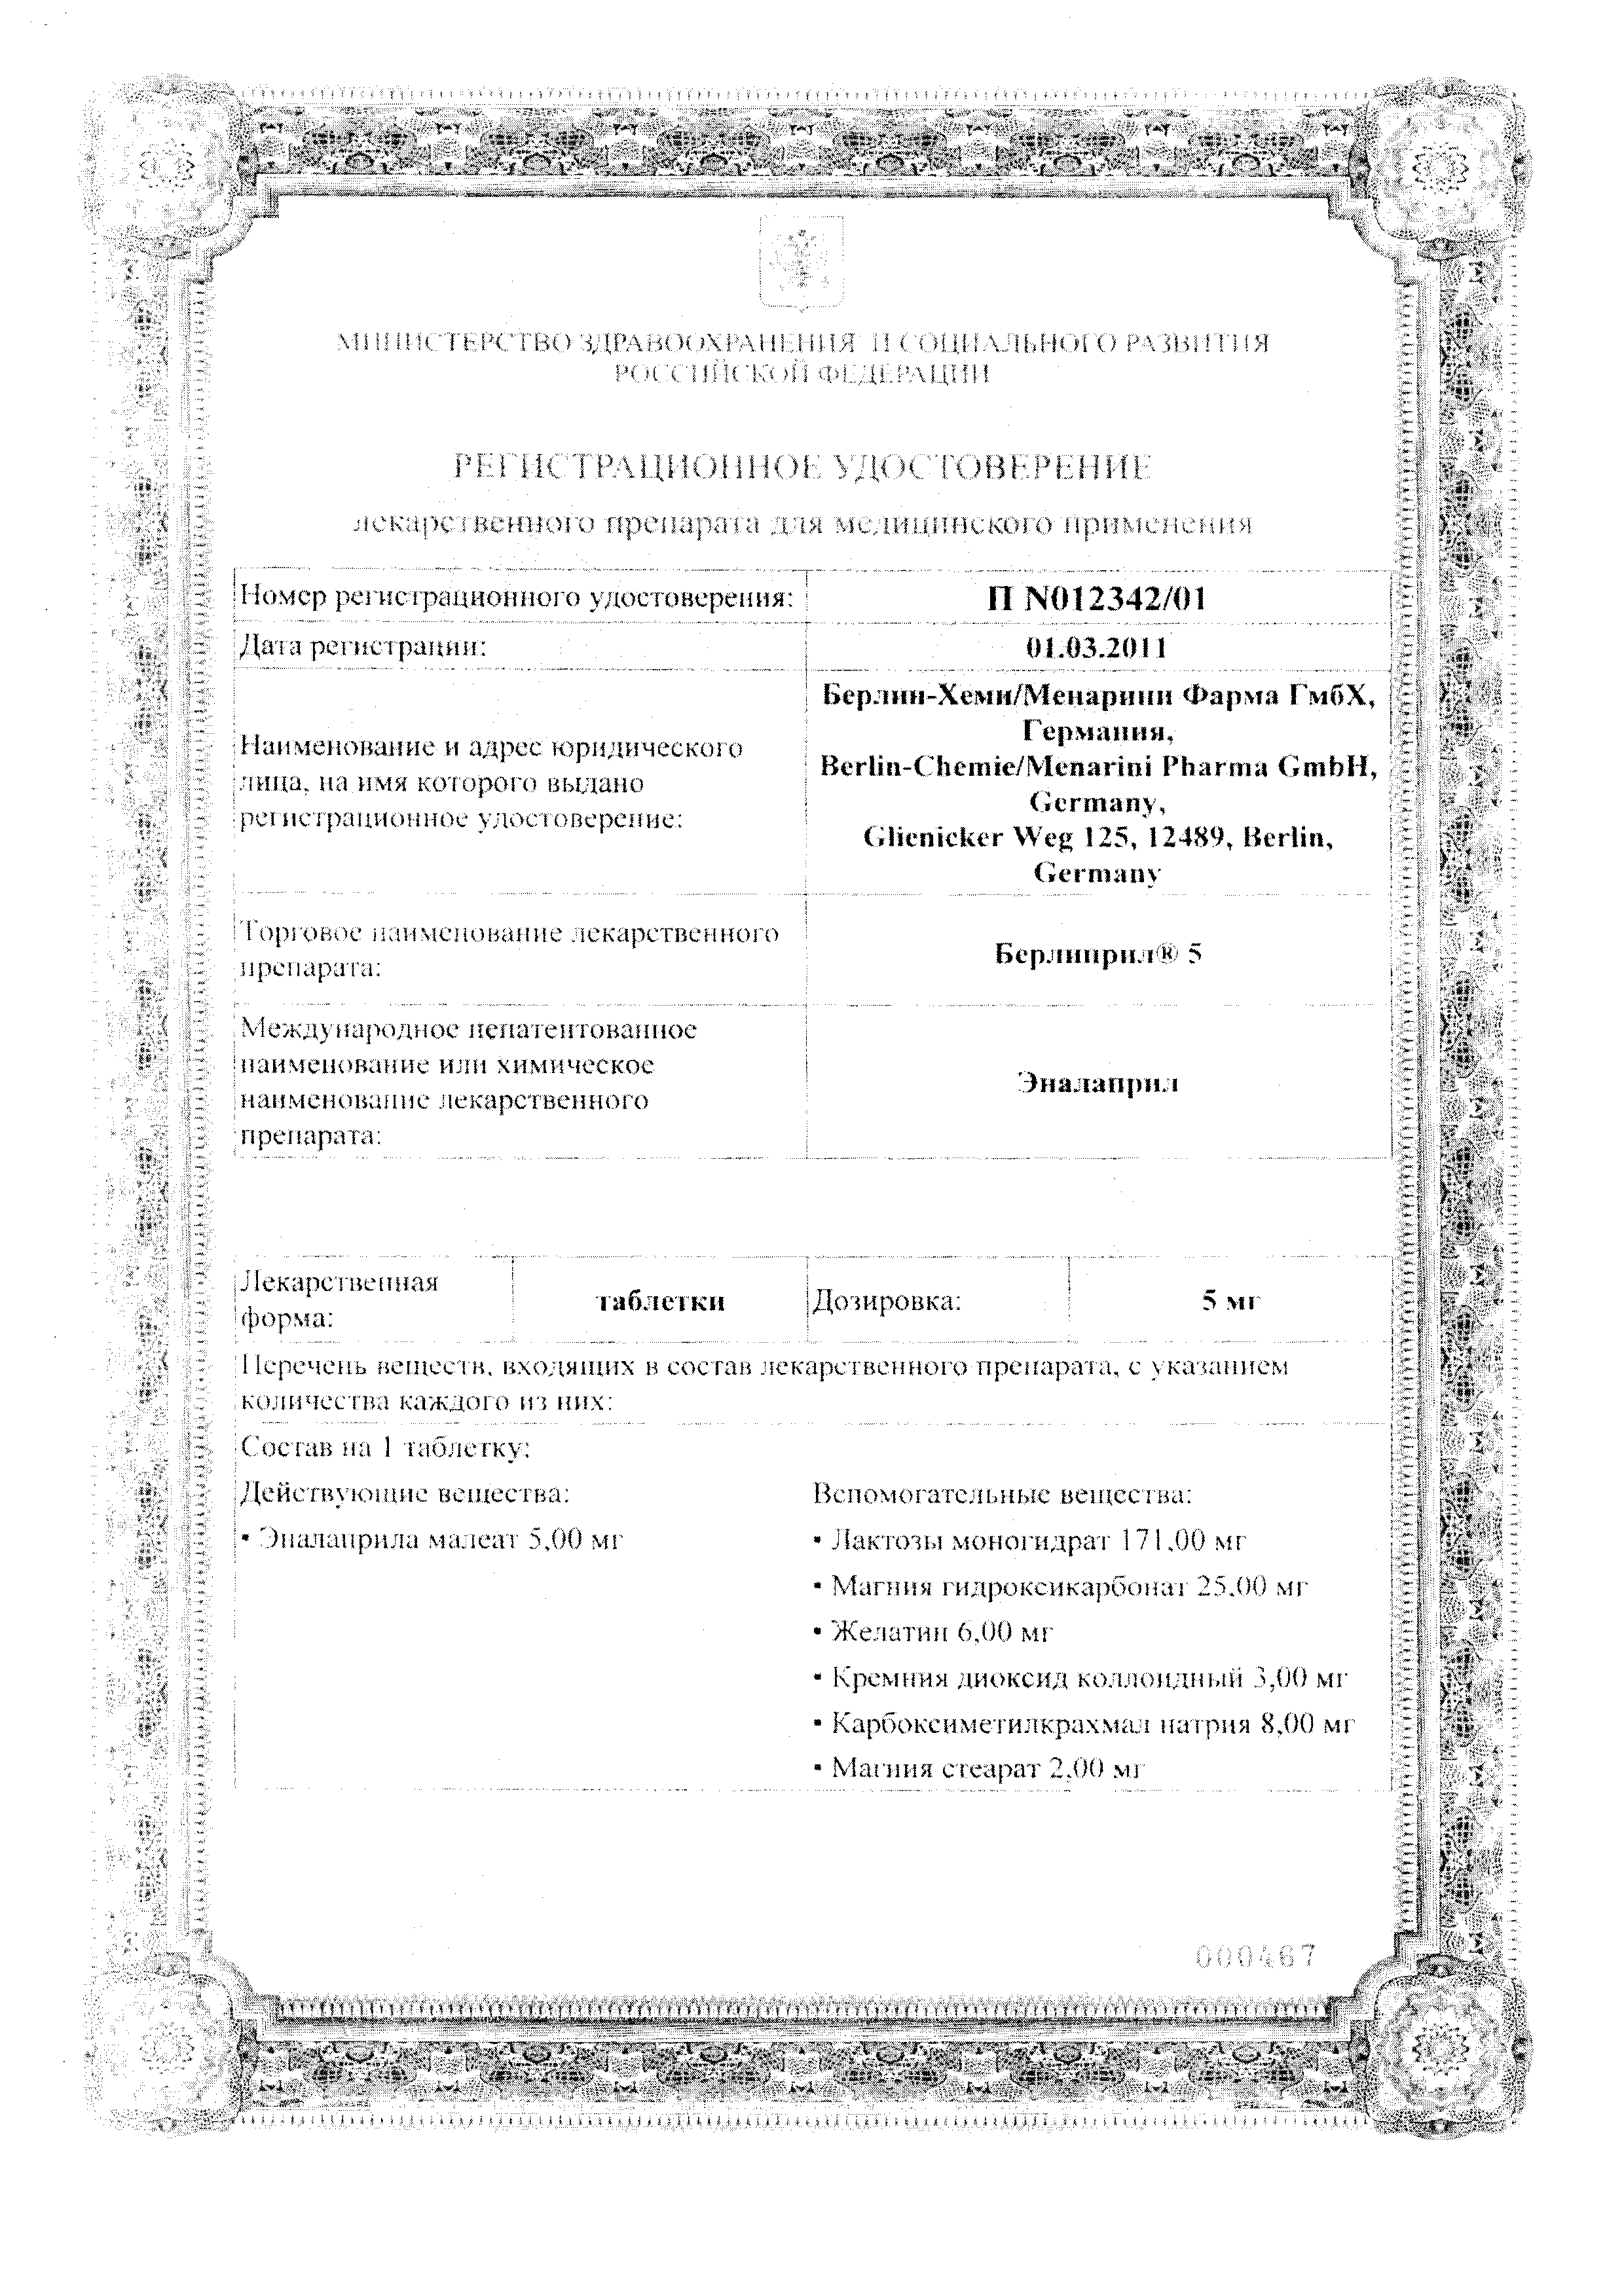 Берлиприл 5 сертификат